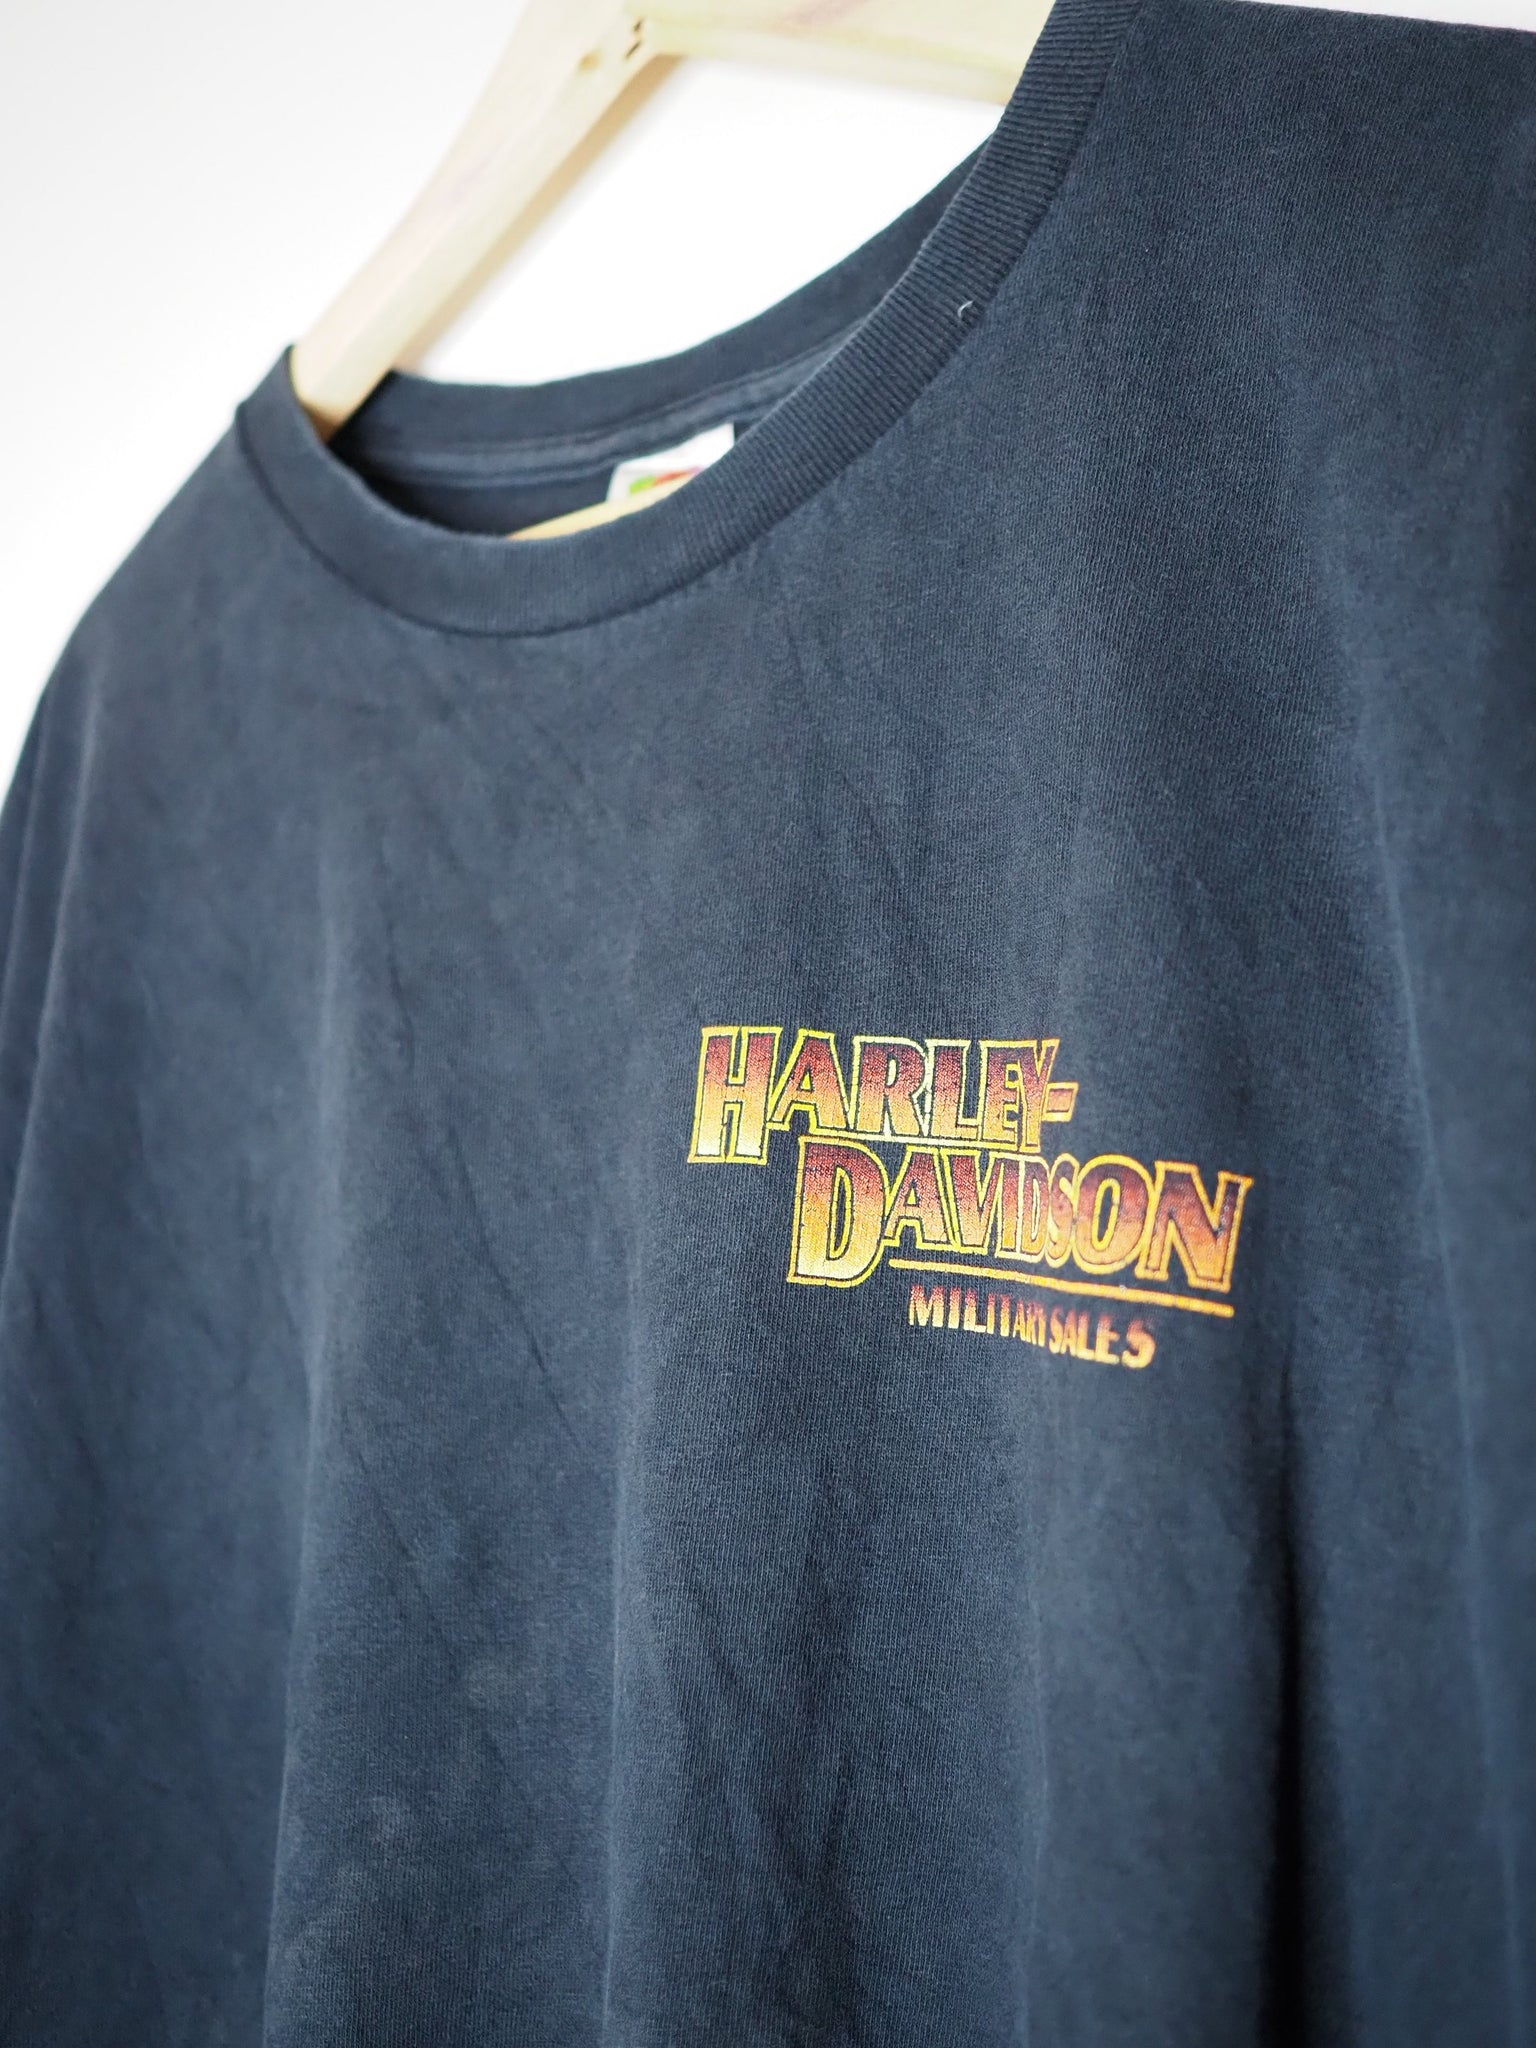 Harley Davidson Military Sales Black T-shirt